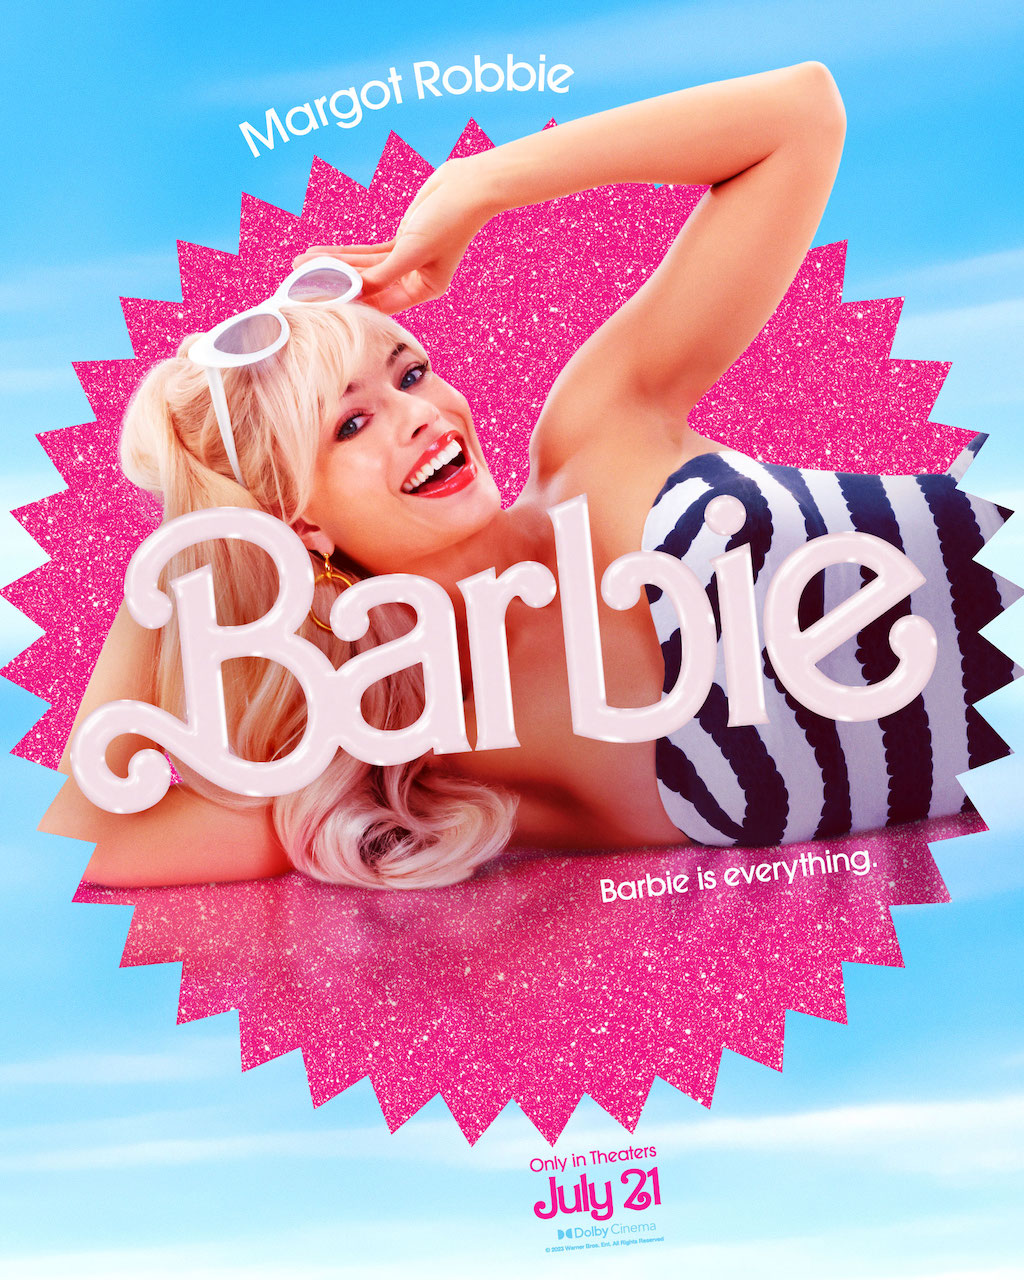 Barbie; Margot Robbie; Mattel; film Barbie con protagonista Margot Robbie, come manifesto della parità di genere e della cooperazione tra donne e uomini; Barbie is everything